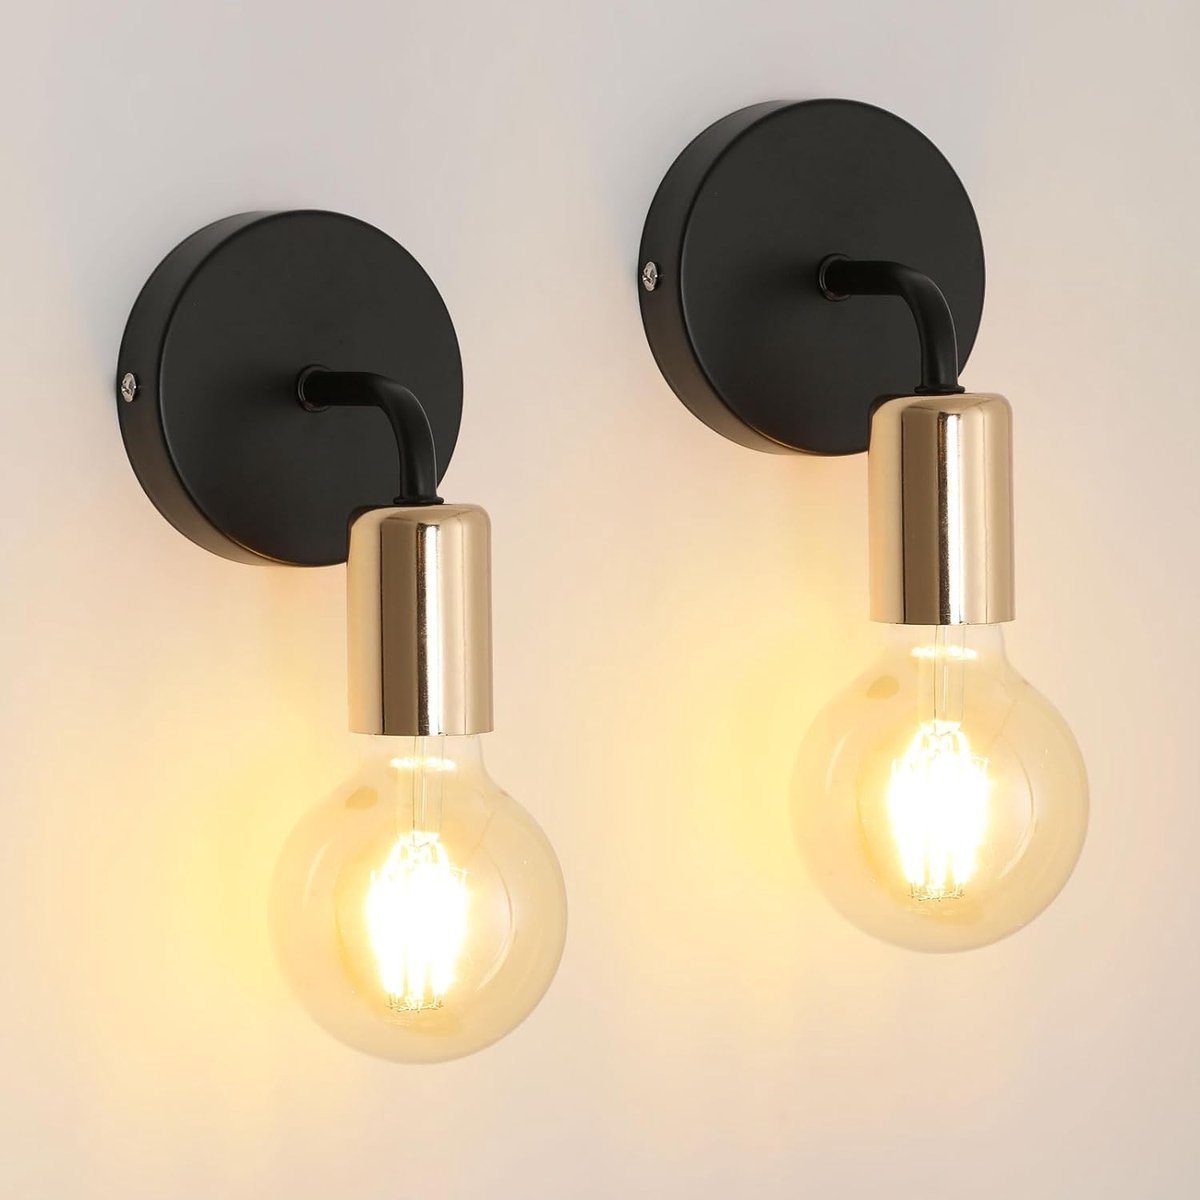 Delaveek-2 stuks Vintage industriële stijl binnen wandlamp - E27 - Zwart goud - Metaal